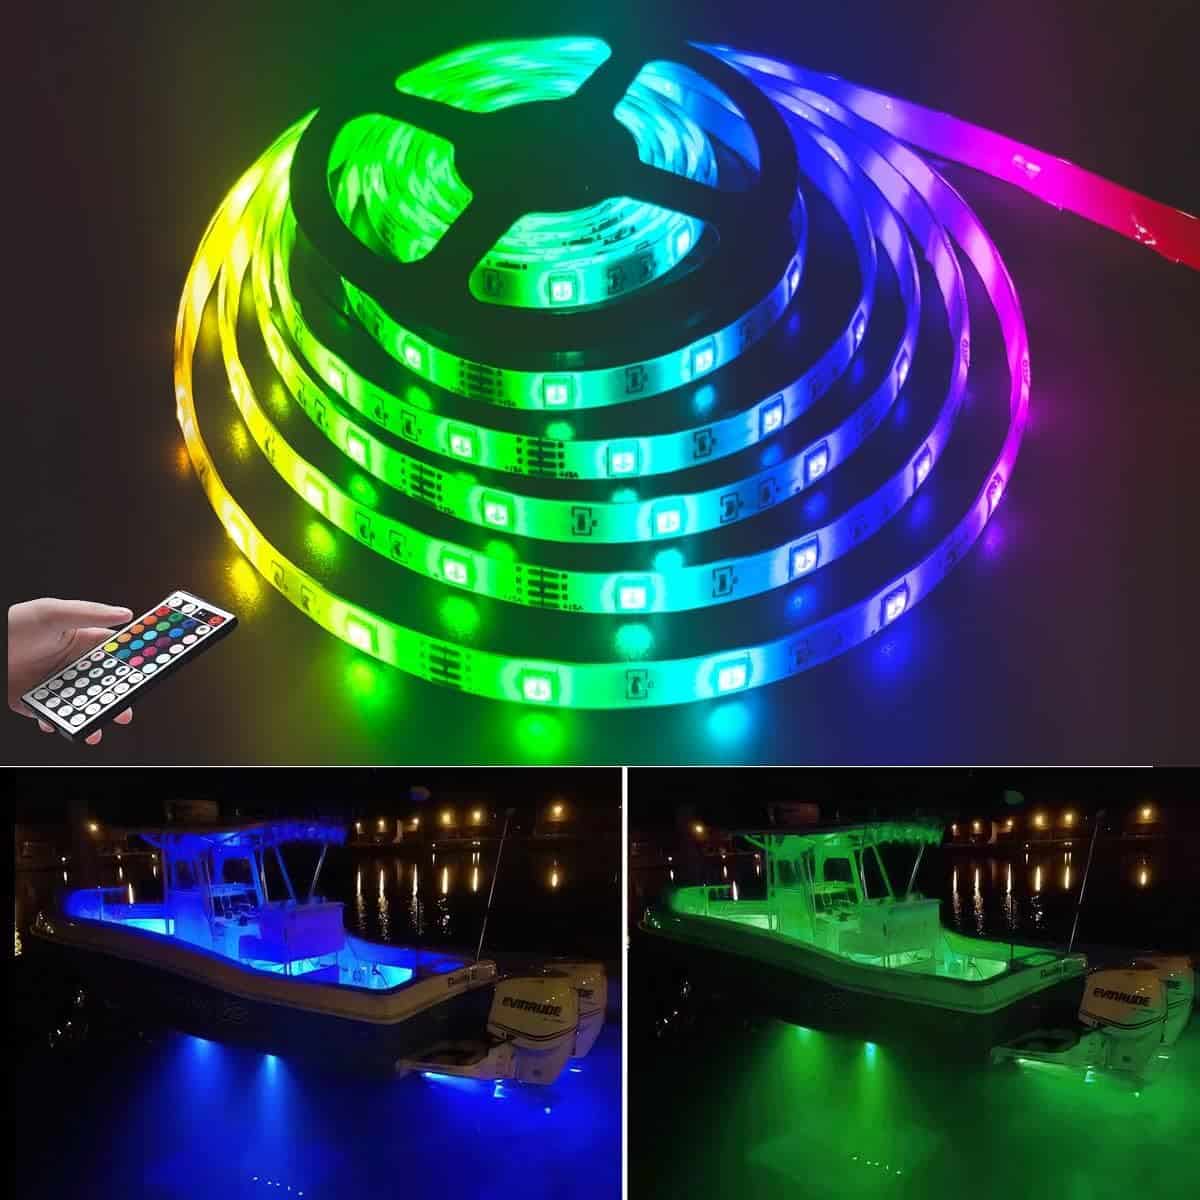 Vbakor 50FT LED Boat Lights, Waterproof Marine Pontoon Led Strip Lights, 20 Colors Changing Boat Deck Interior Light, Boat Accessories, Under Gunnel Lights, Night Fishing Lights for Boats